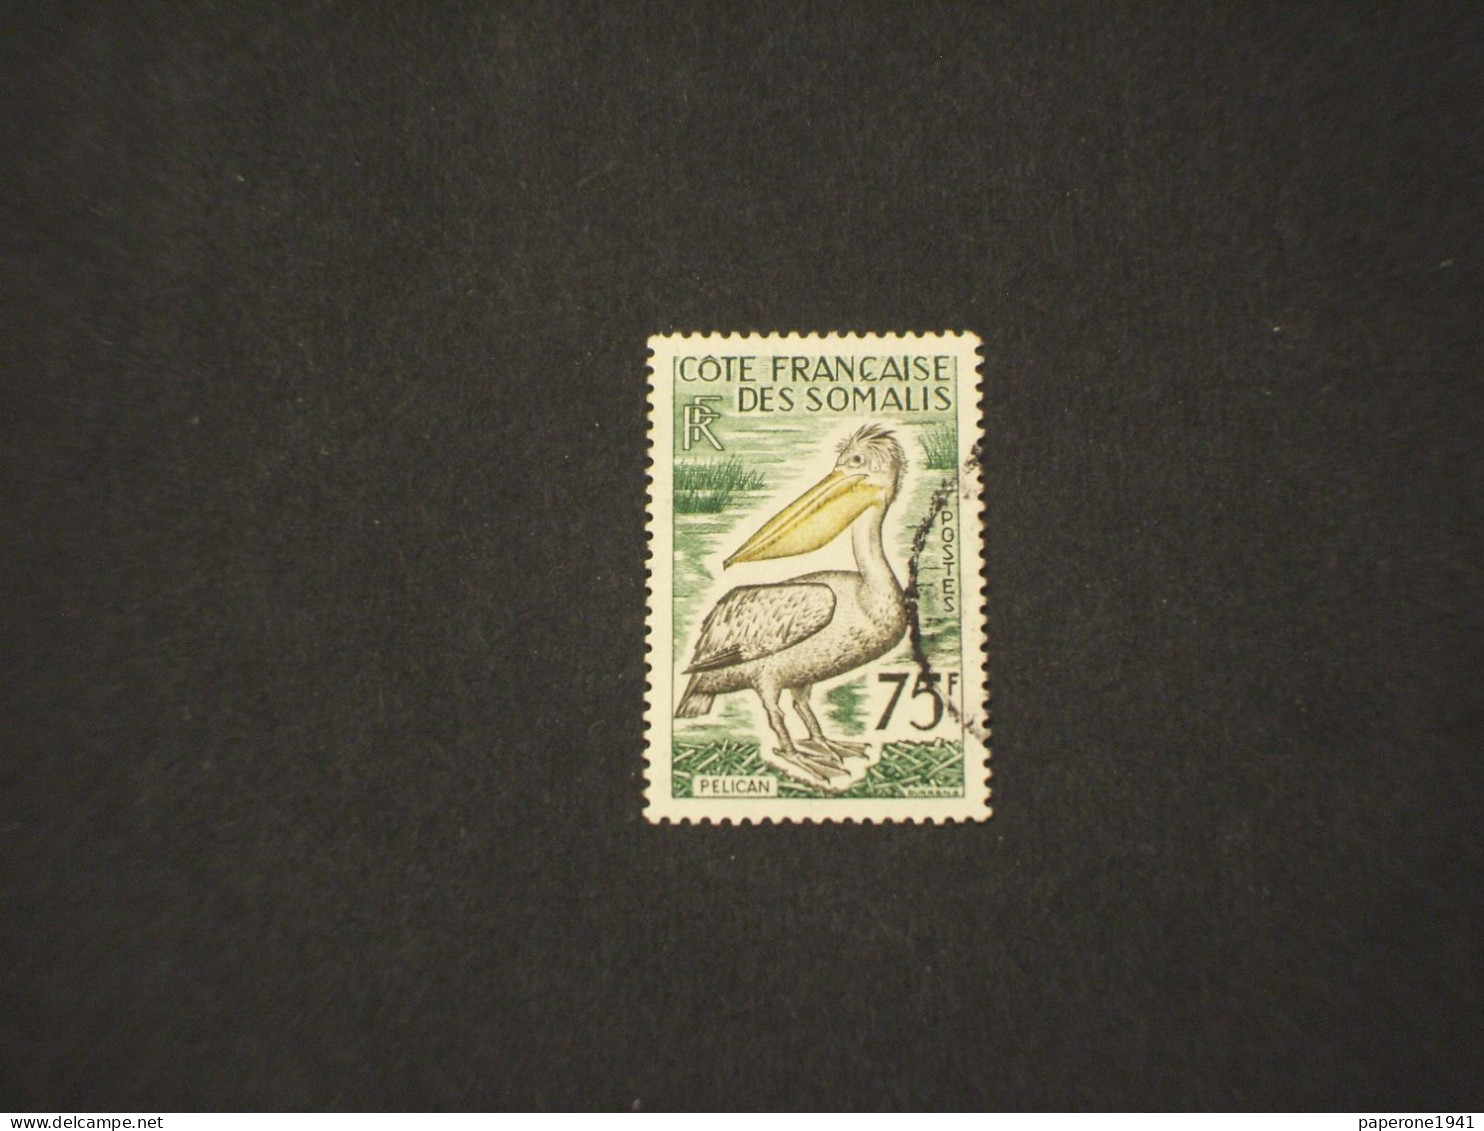 COSTA FRANCESE DEI SOMALI-COTE FRANCAISE DES SOMALIS - 1959/60 UCCELLO/PELLICANO 75 F. - TIMBRATO/USED - Gebruikt